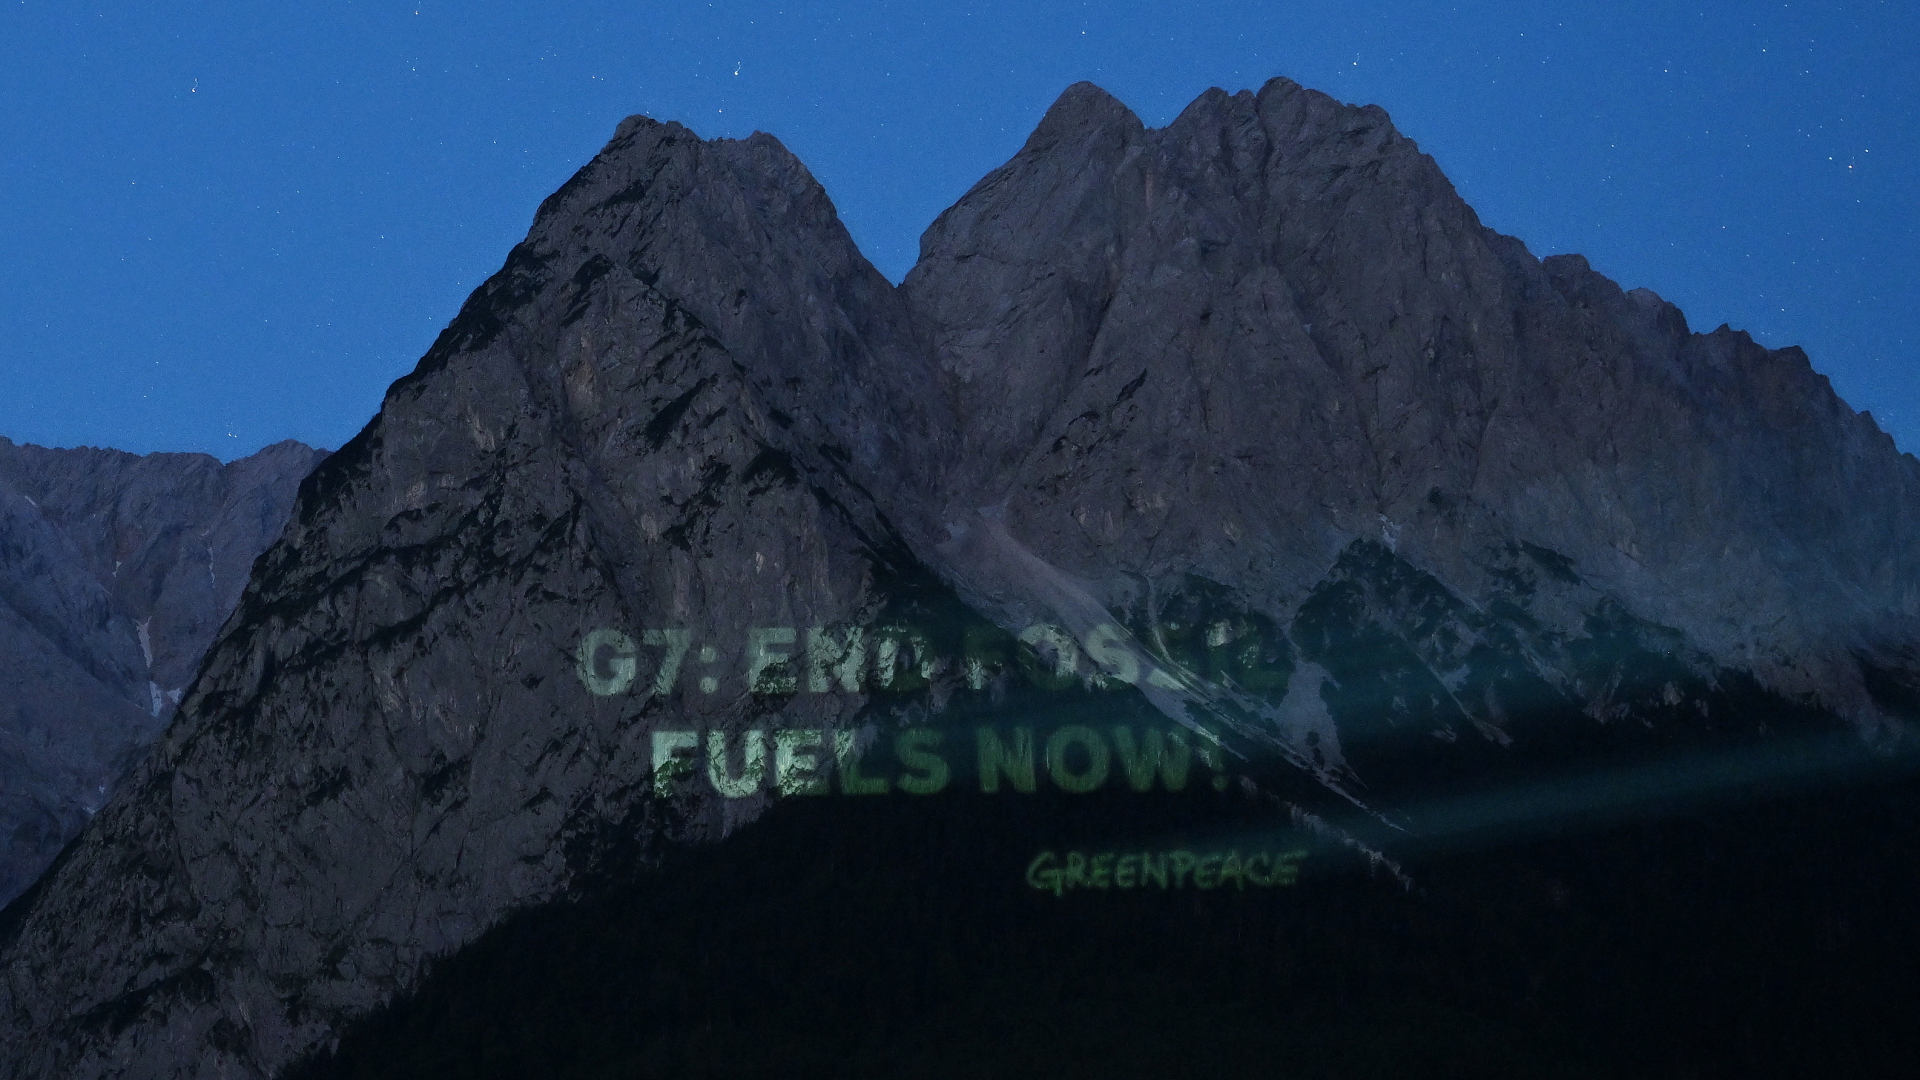 Schriftzug "G7: End Fossil Fuels now! Greenpeace" an einer Felswand | dpa